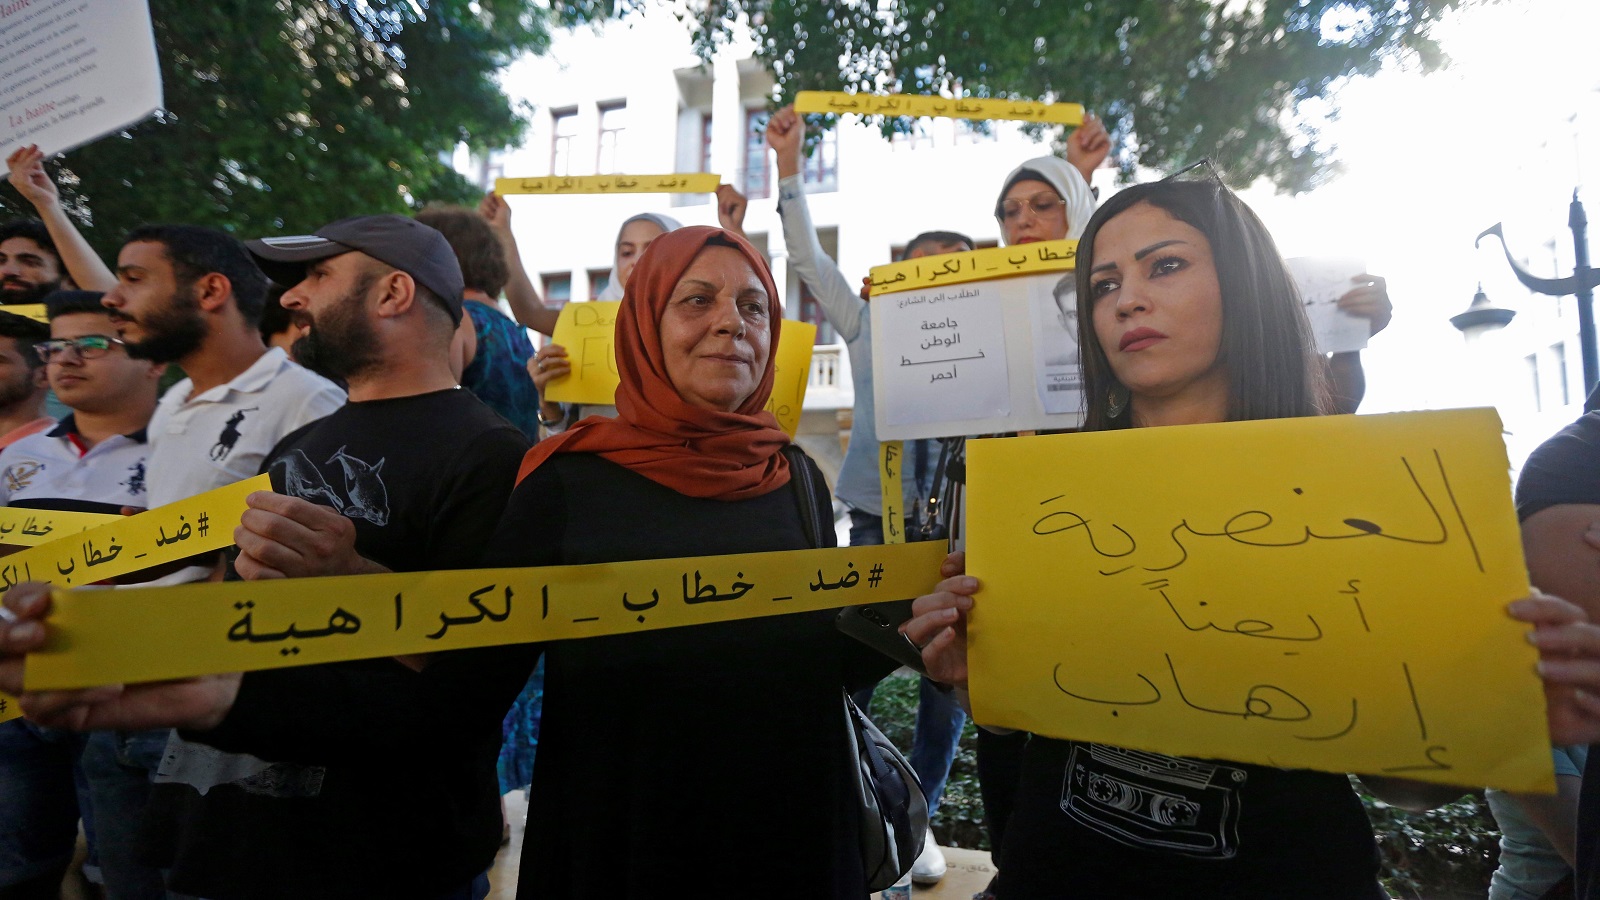 ساحة سمير قصير: مع اللاجئين رفضاً لخطاب الكراهية